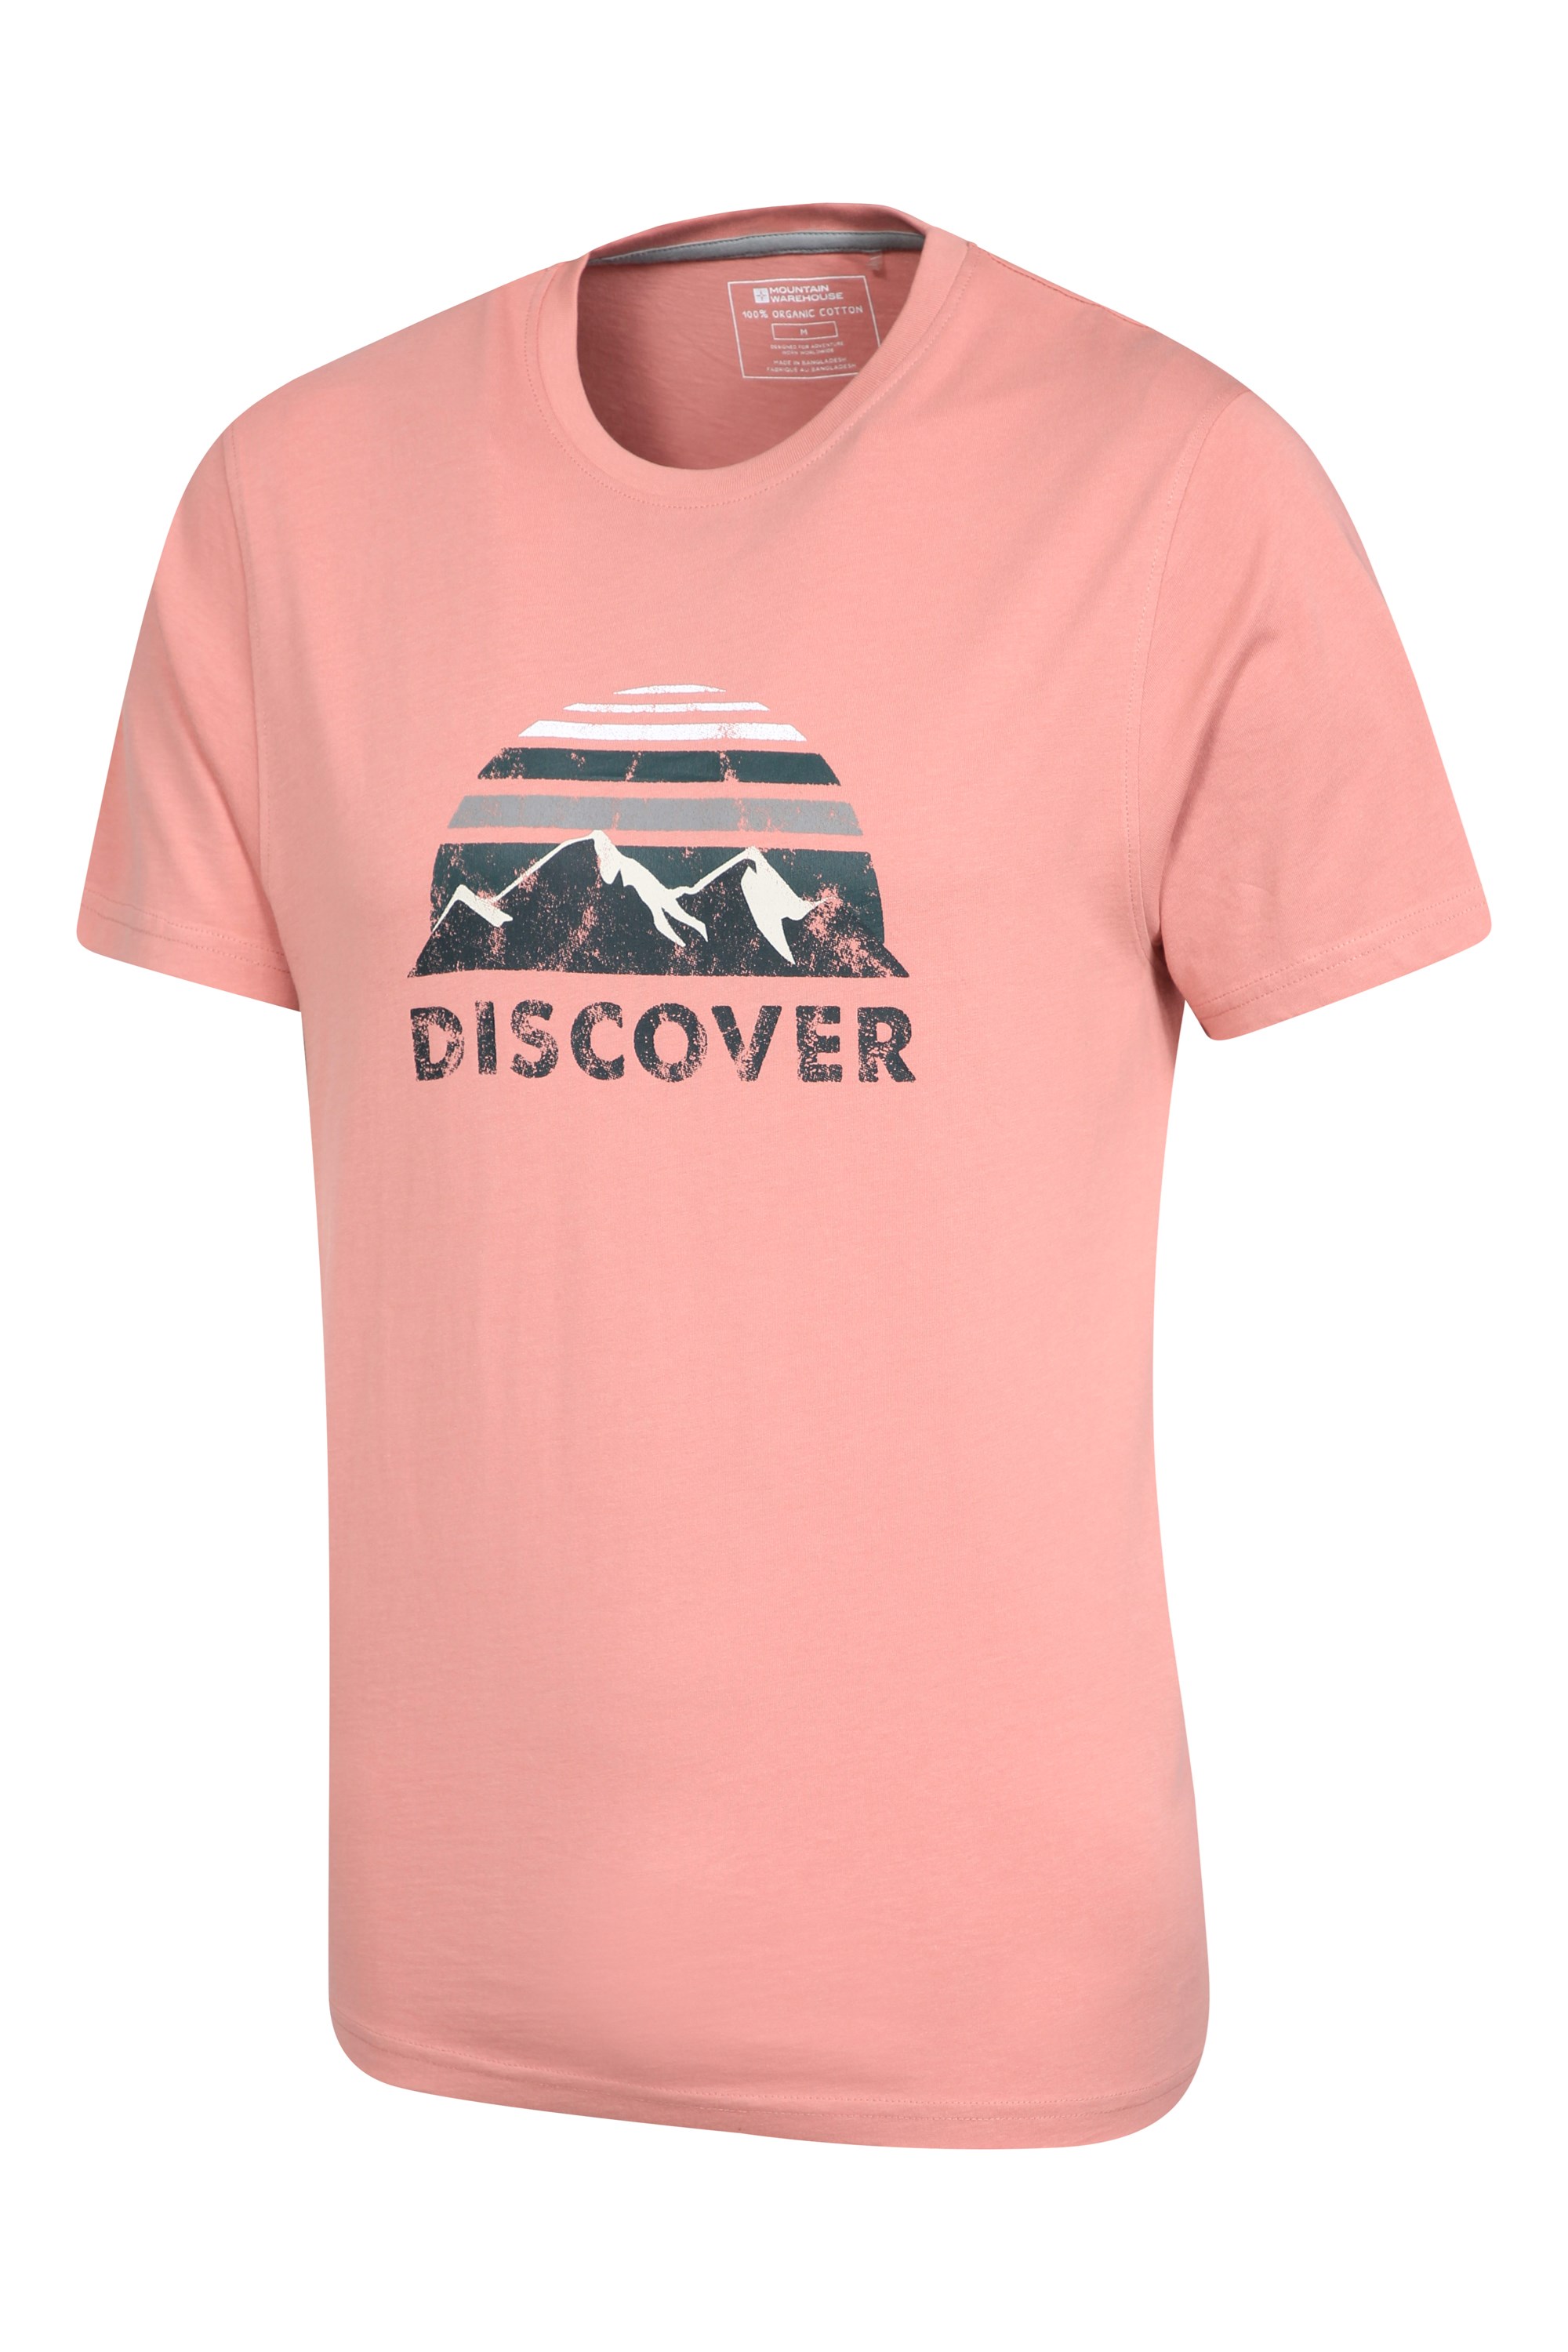 Mountain Warehouse Mens Organic Cotton T-Shirt - Lightweight 